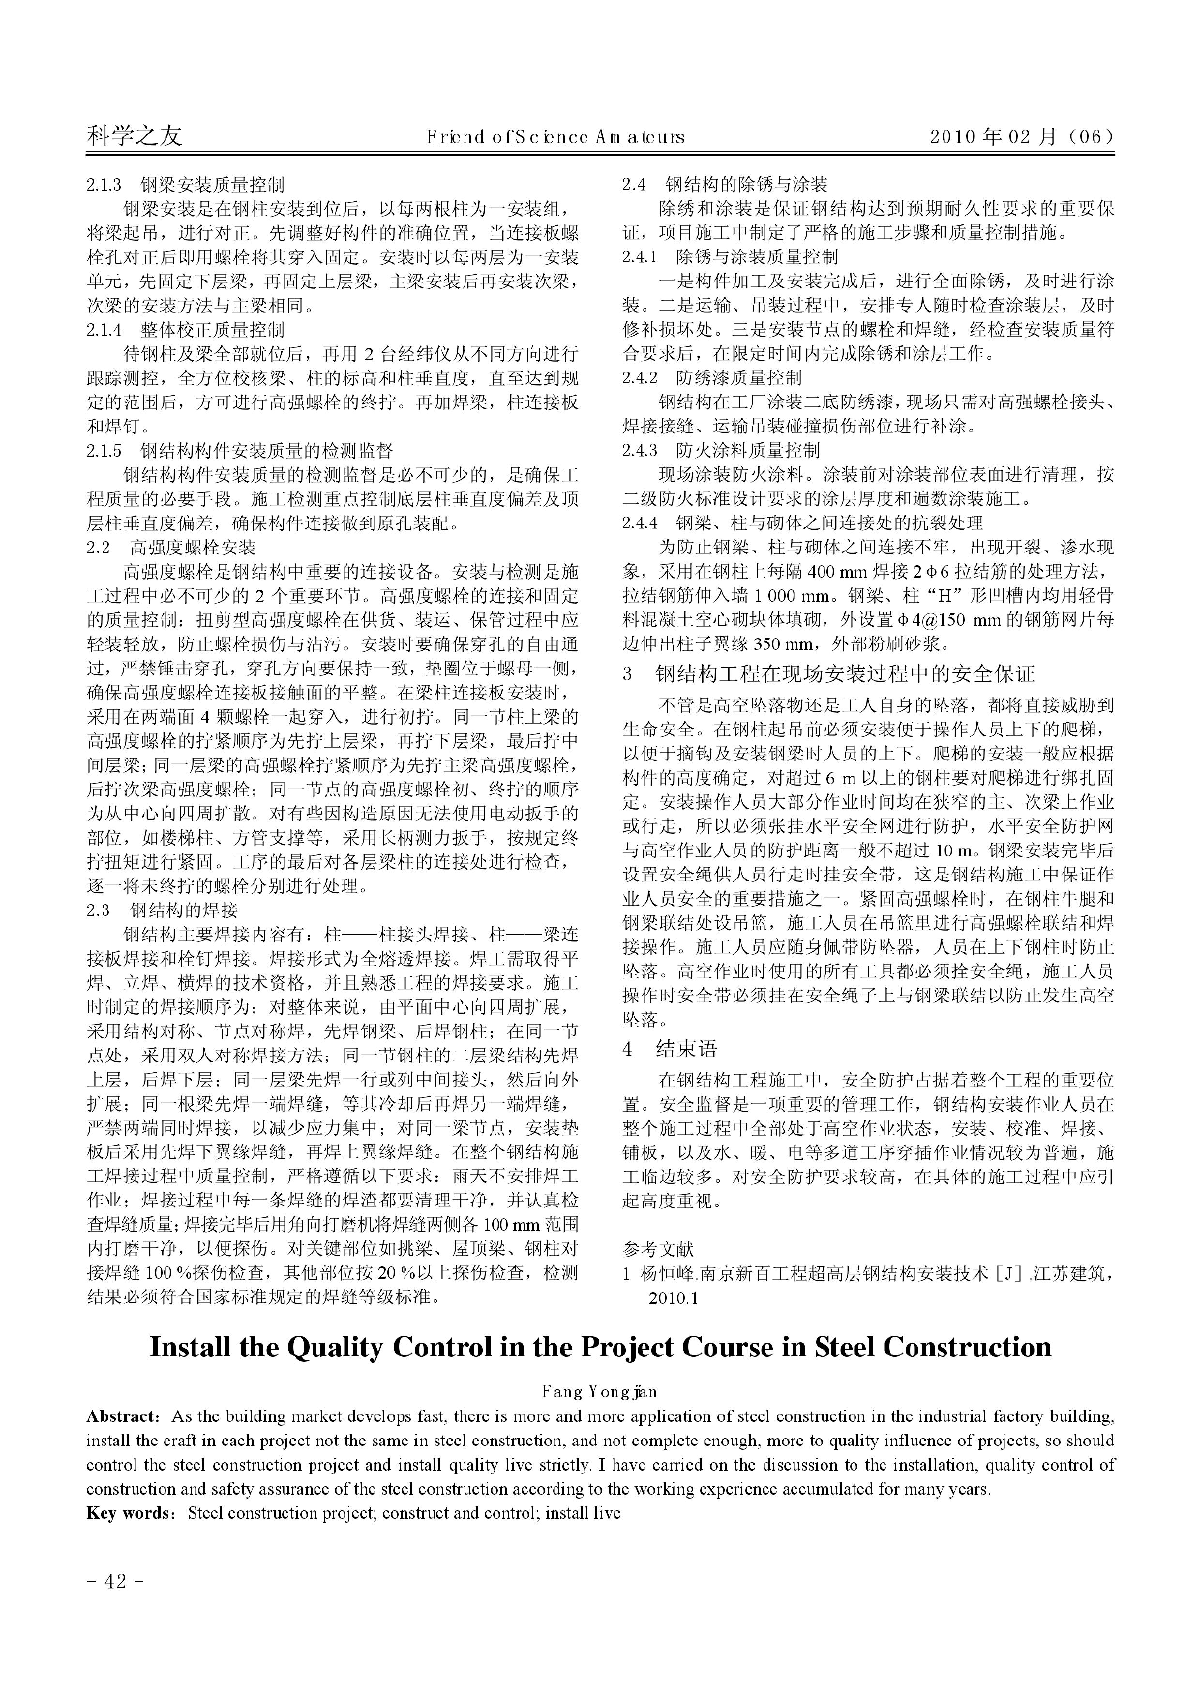 钢结构安装工程过程中质量控制_方永坚-图二